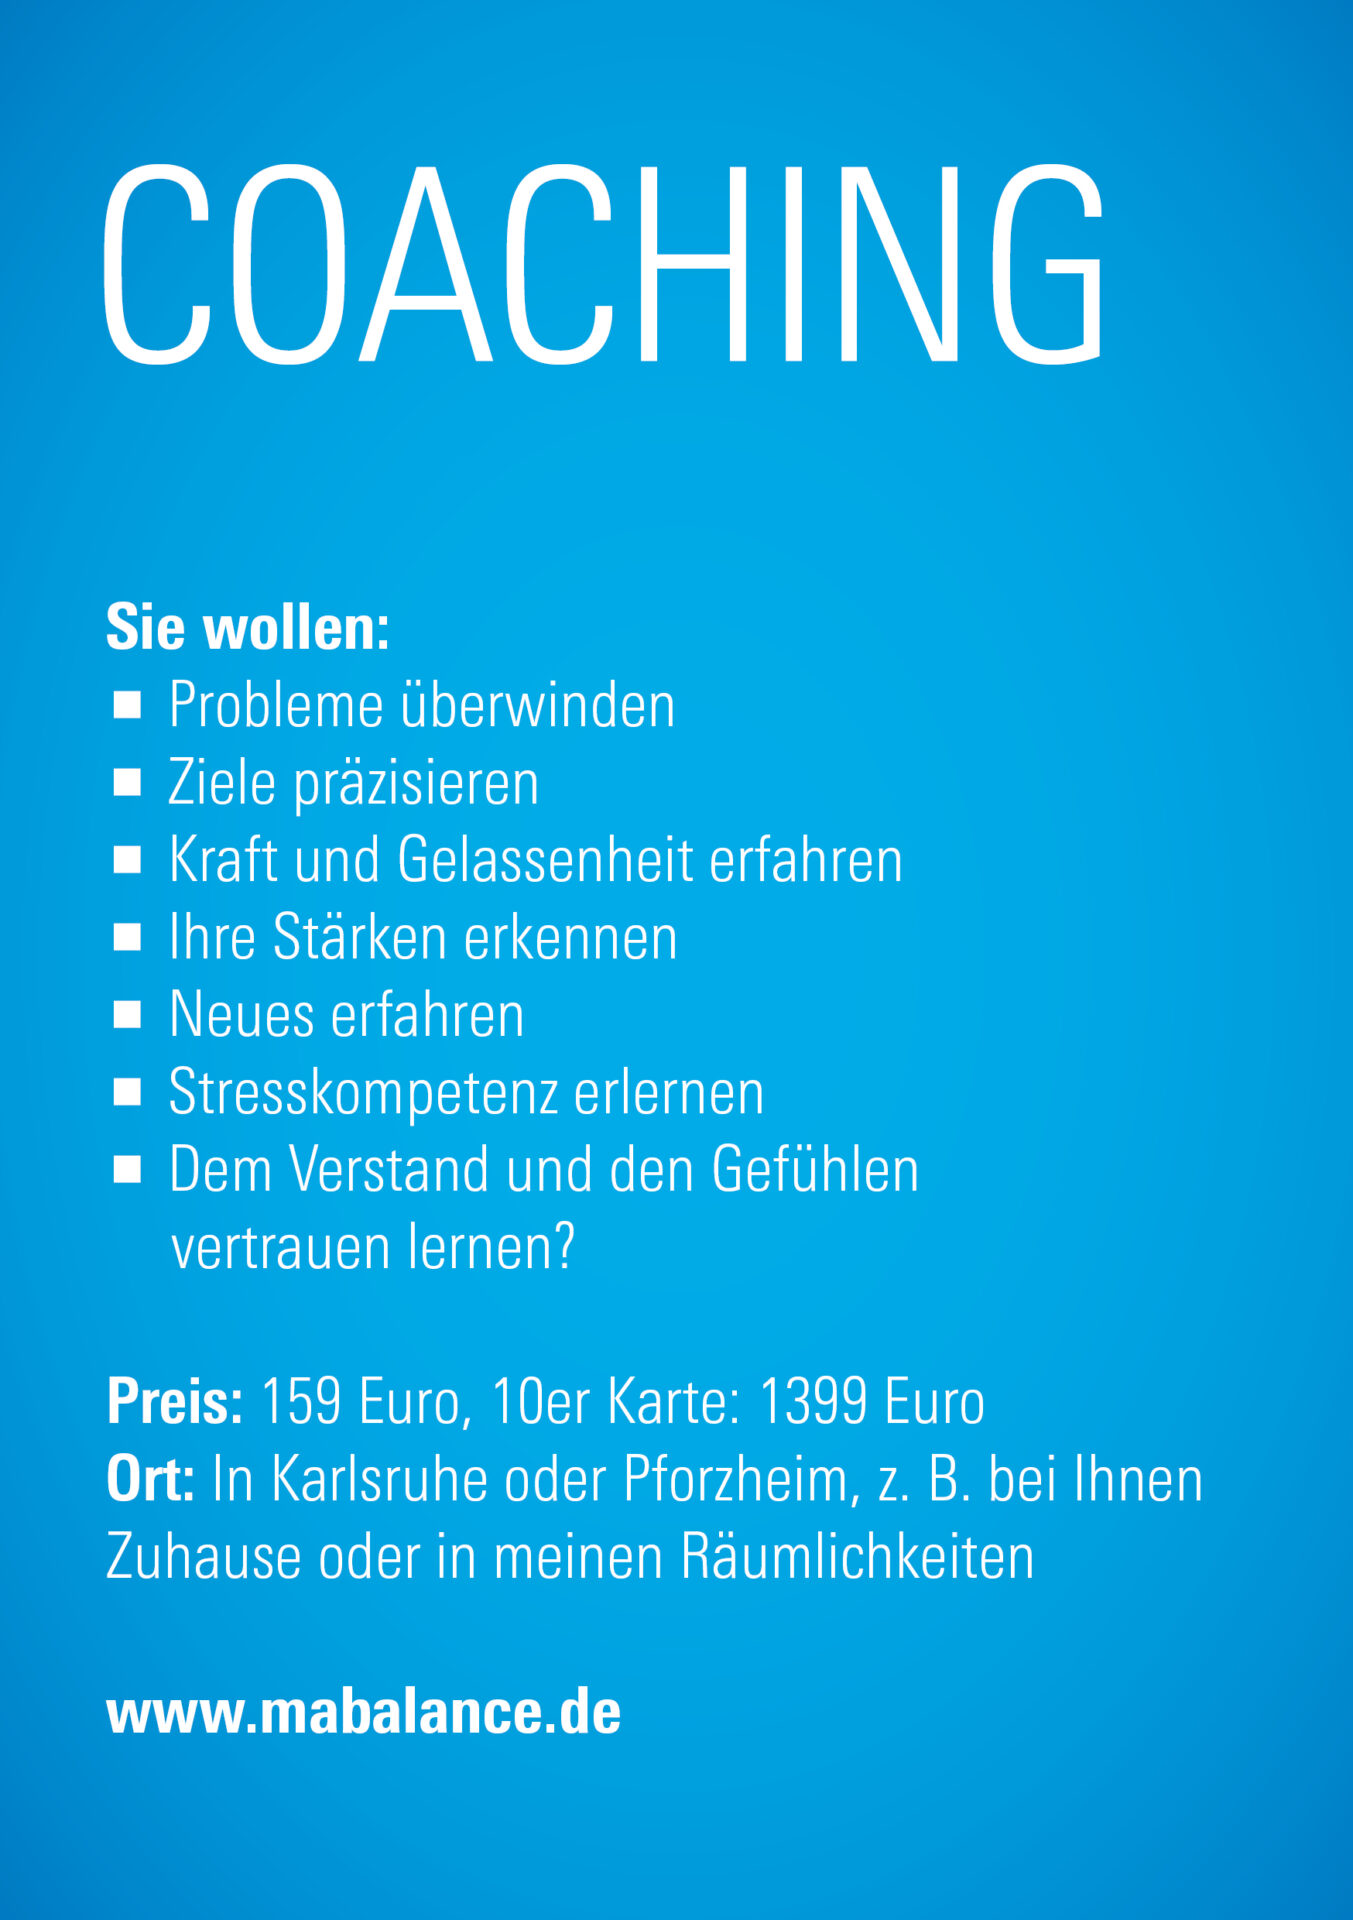 Coaching-Mabalance-in Pforzheim-in Karlsruhe-Erreiche dein Ziel